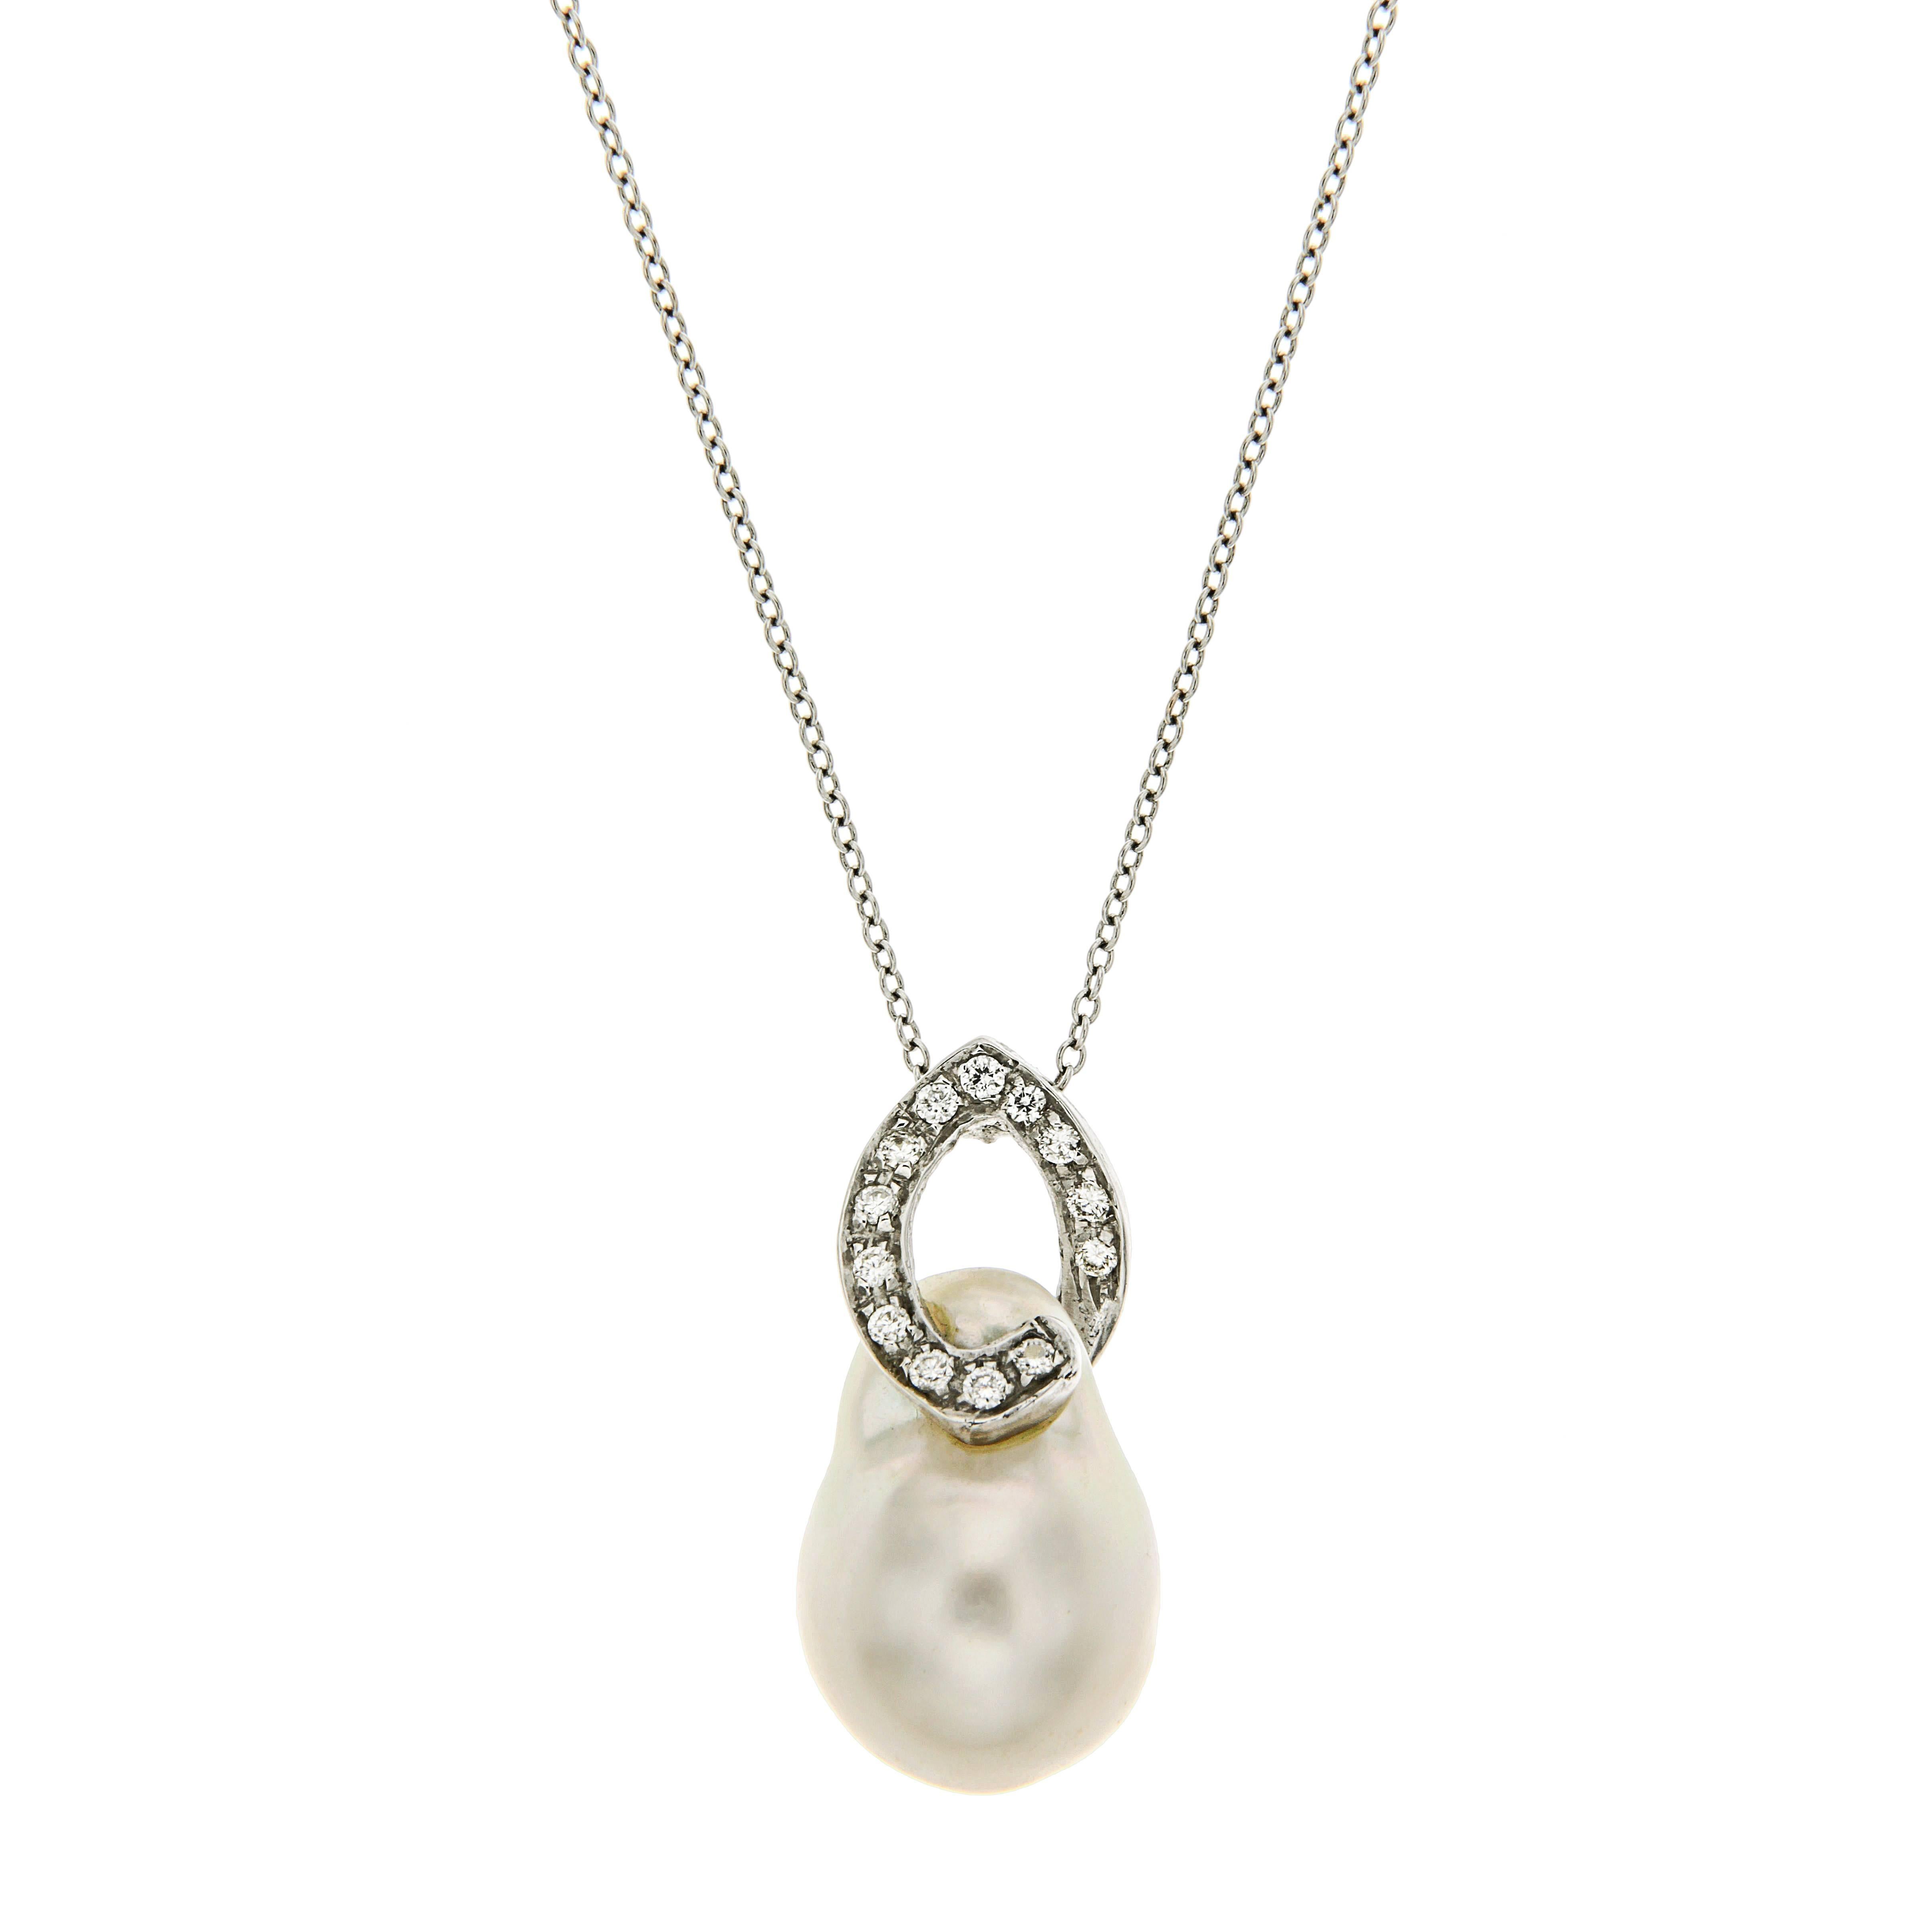 Halskette aus 18 Karat Weigold mit australischen Perlen und Diamanten, handgefertigt